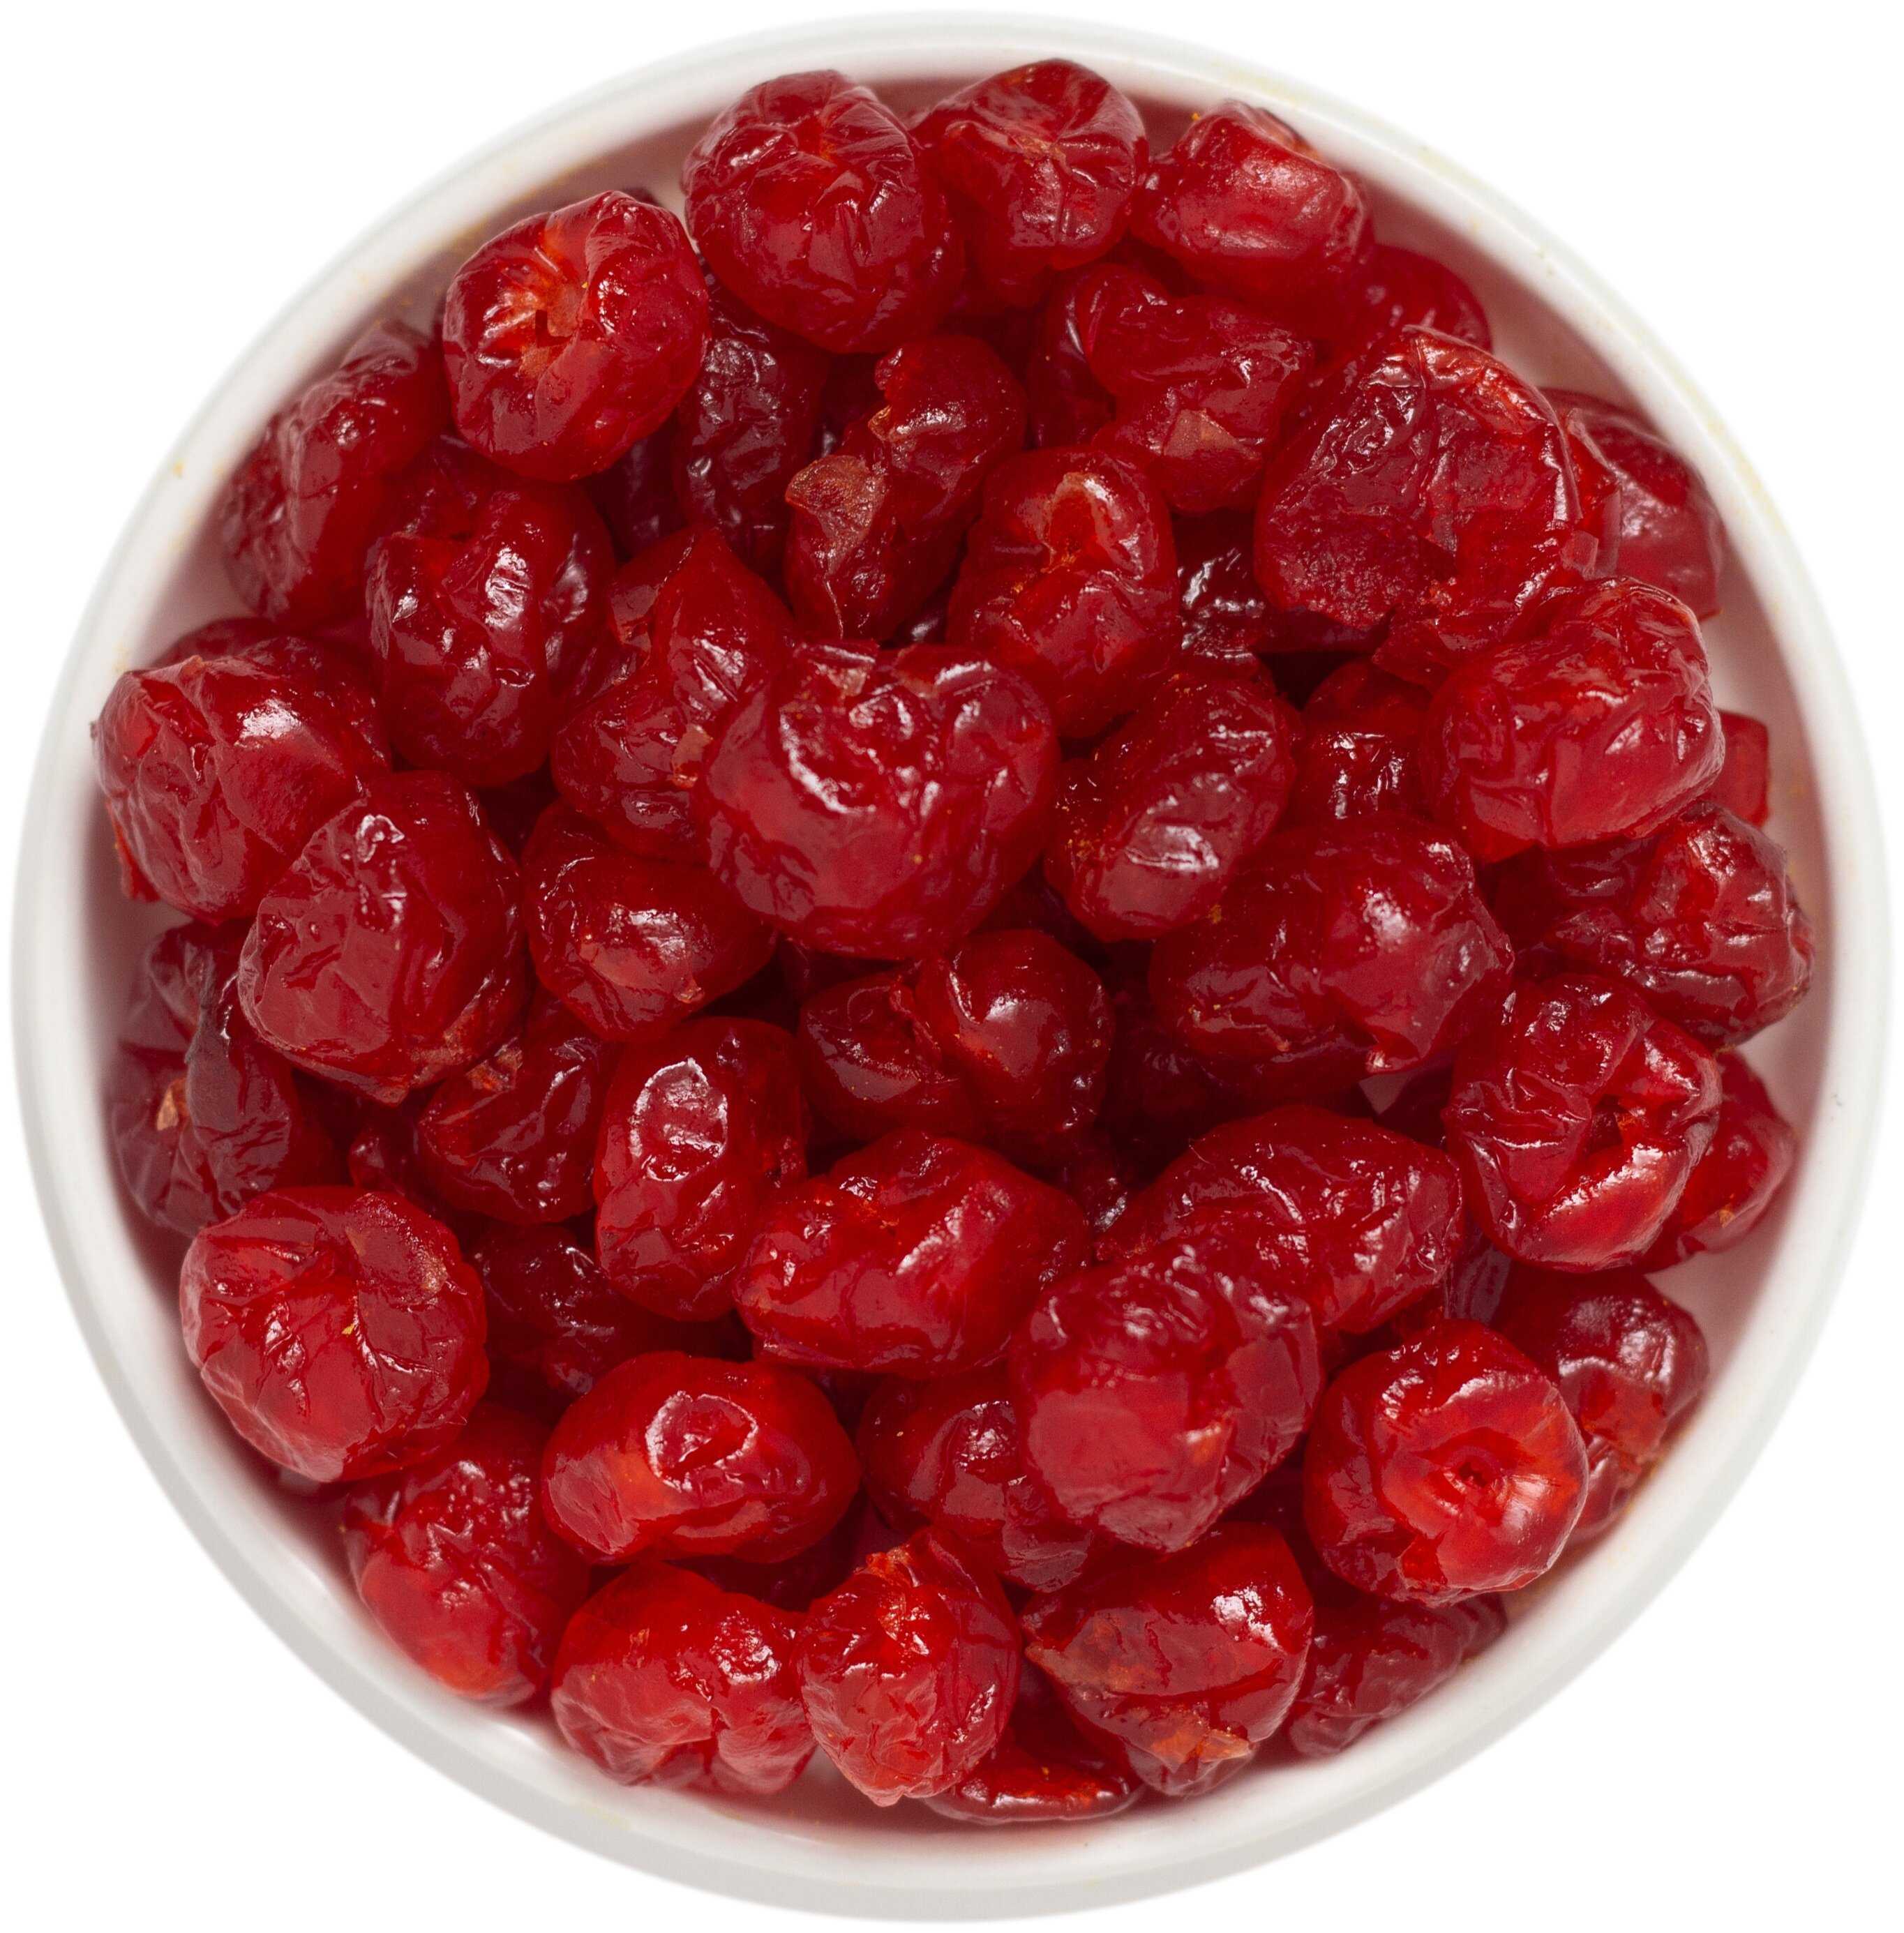 Вишня – ягода, которую любят, наверное, все Благодаря своей низкой калорийности вишня может использоваться в качестве продукта для снижения веса